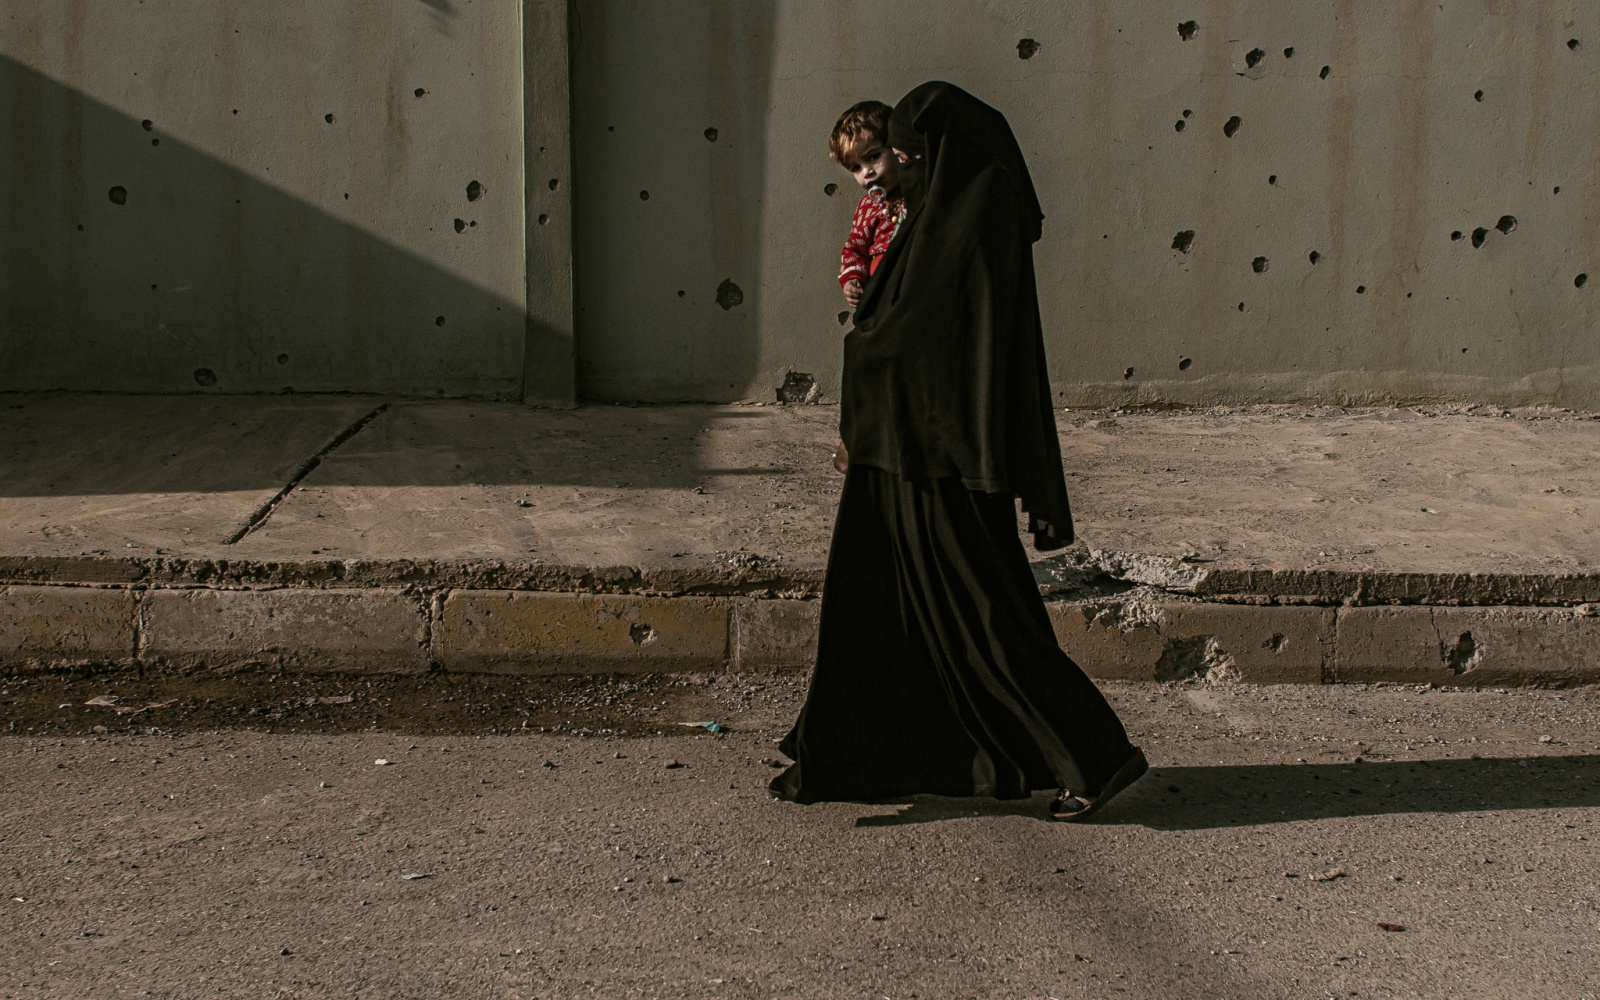 Eine in schwarz verhüllte Frau mit Kind läuft vor einer von Feuerwaffen durchlöcherte Wand.